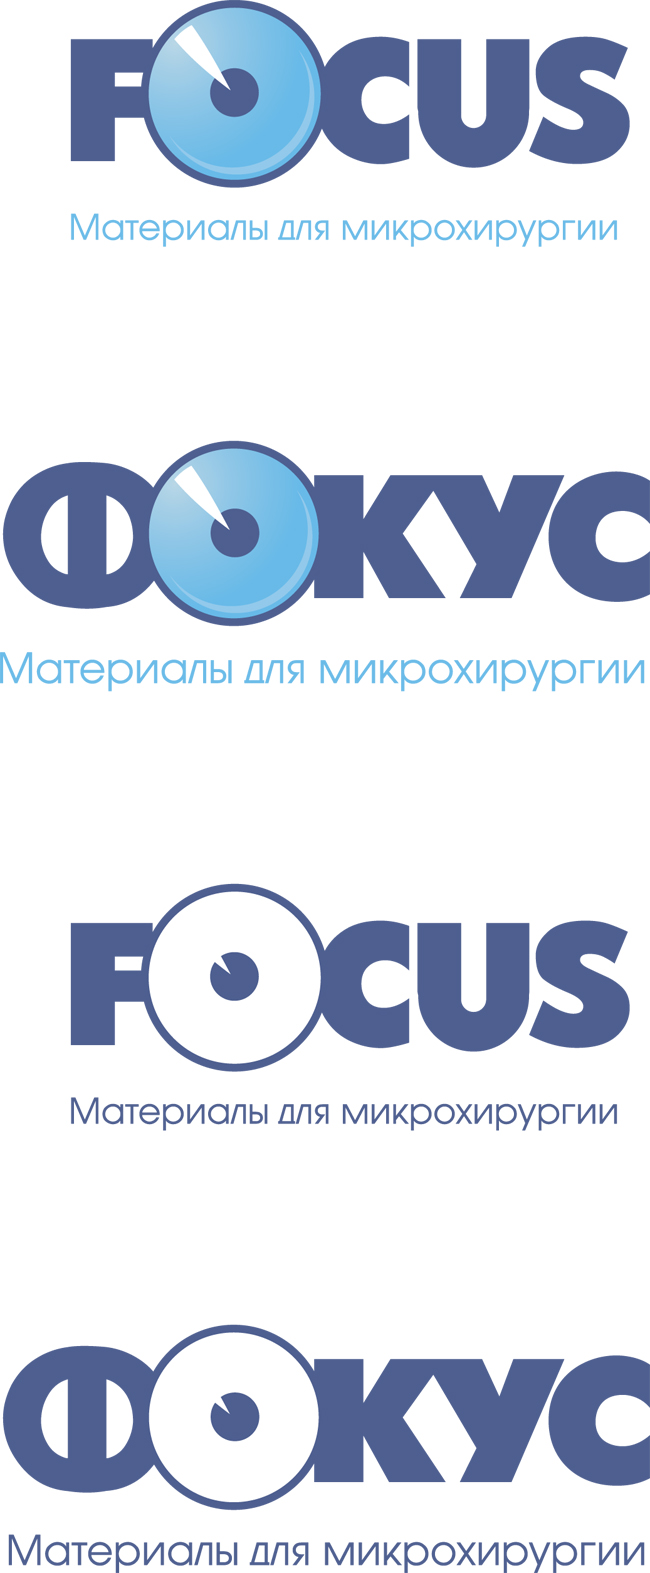 Логотип компании в разных вариациях Focus